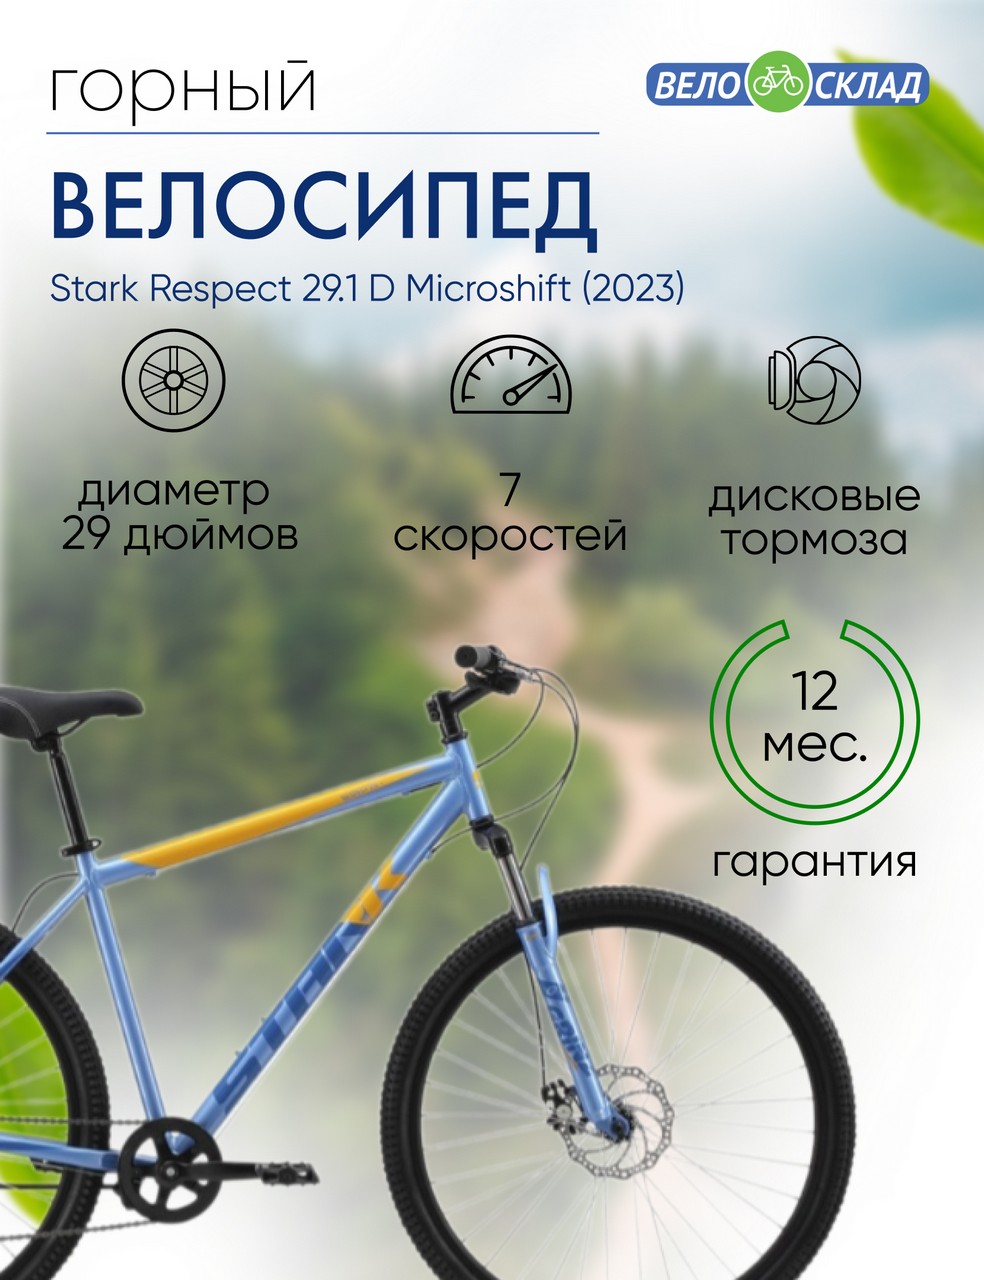 Горный велосипед Stark Respect 29.1 D Microshift, год 2023, цвет Голубой-Синий, ростовка 20